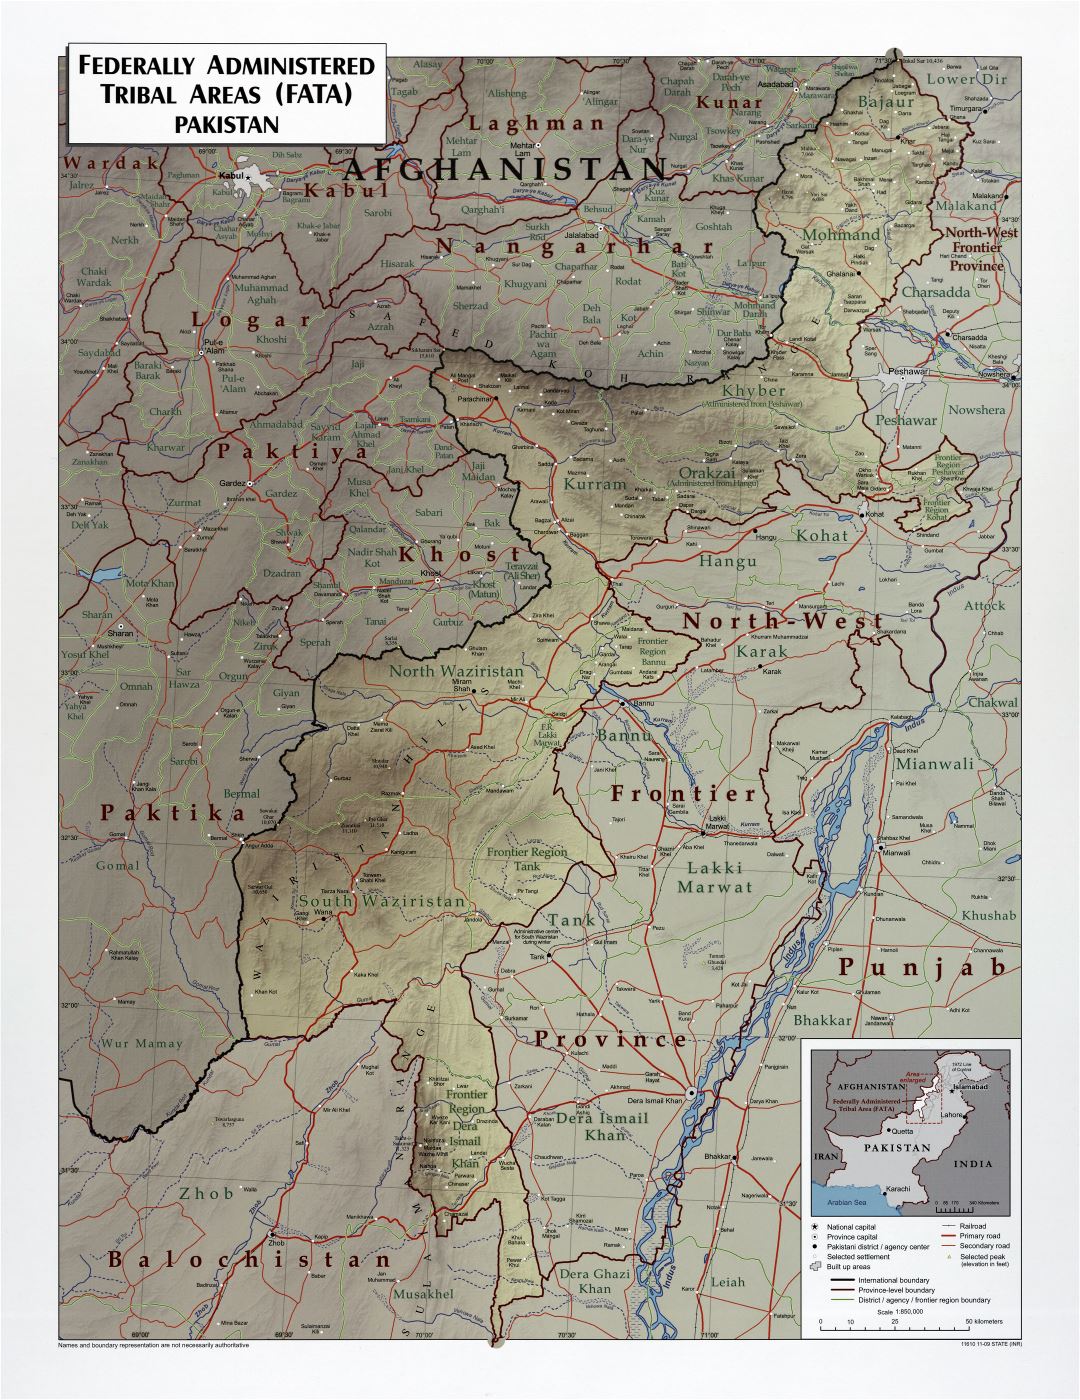 A gran escala detallado mapa de áreas tribales administradas por el gobierno federal (FATA) de Pakistán con socorro, carreteras, ferrocarriles y ciudades - 2009